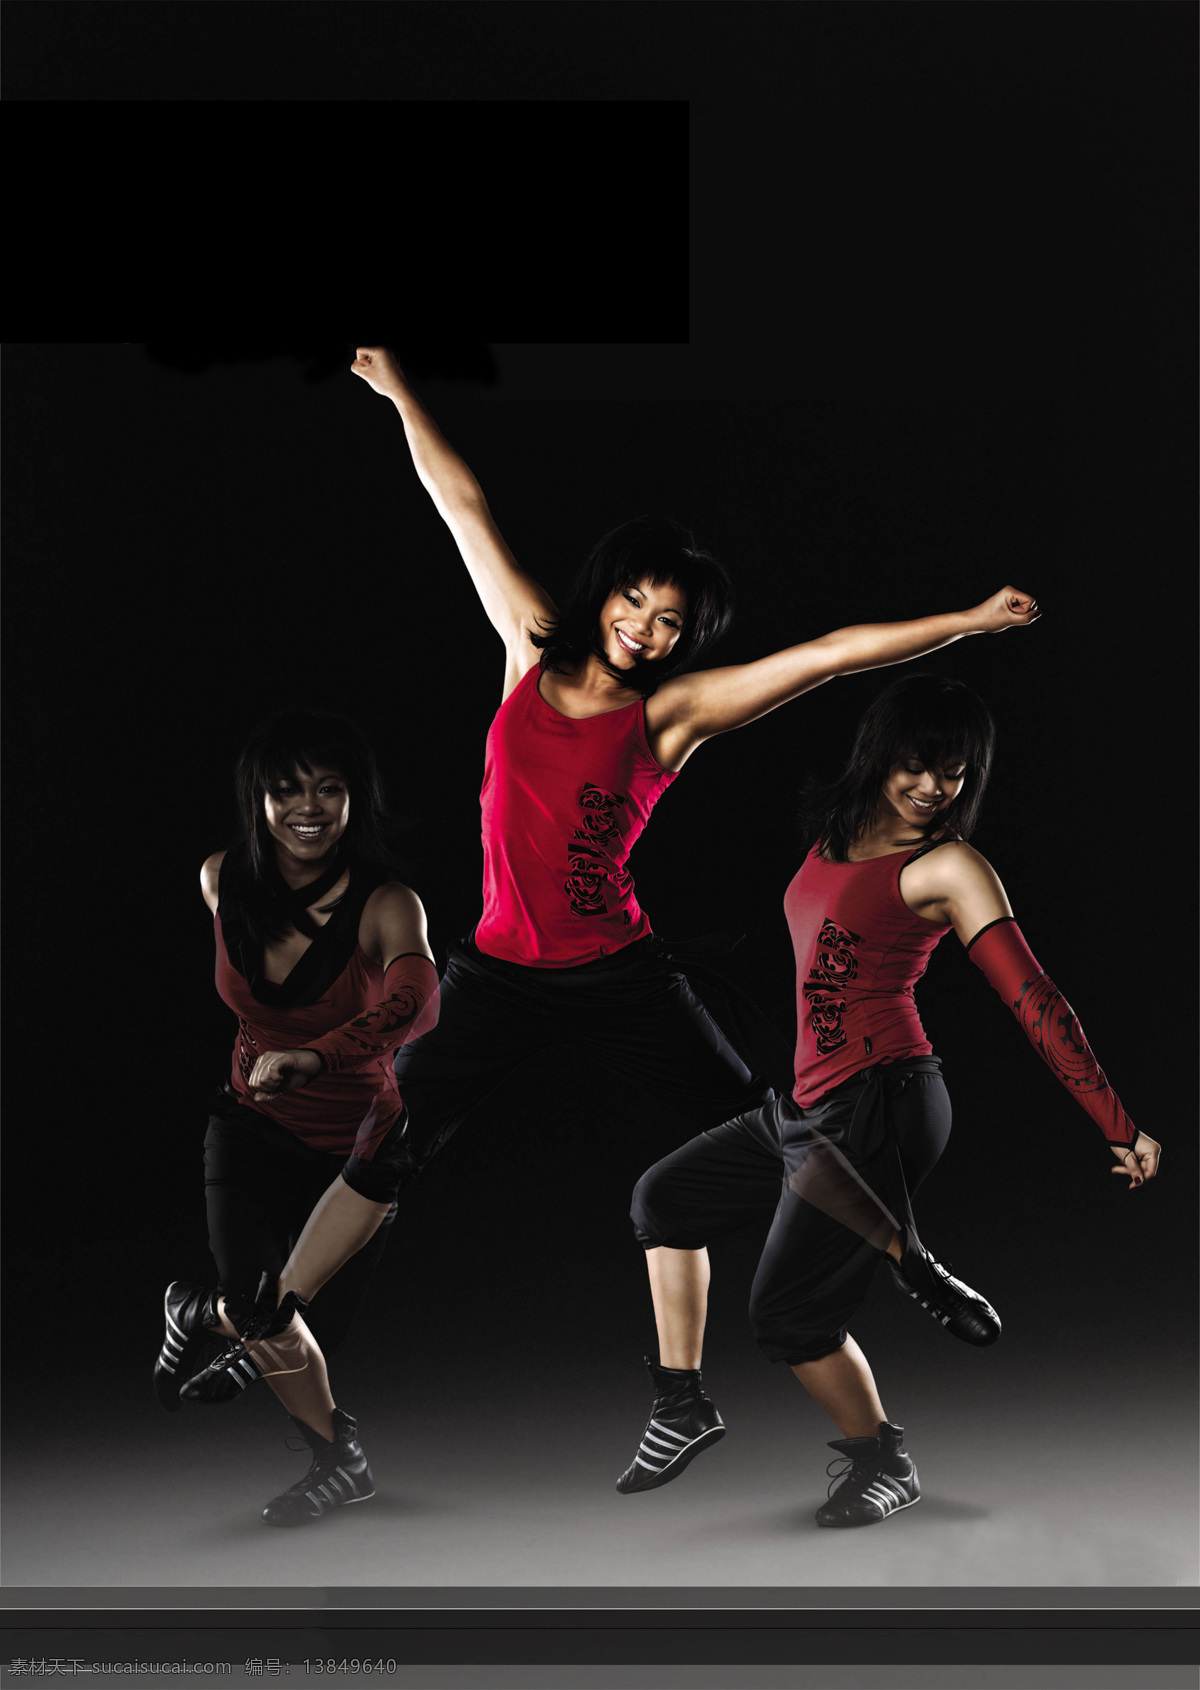 热舞 健身 有氧操 莱美 杠铃 运动 力量 活力 动感 健美 激情 舞蹈 健身操 体育运动 文化艺术